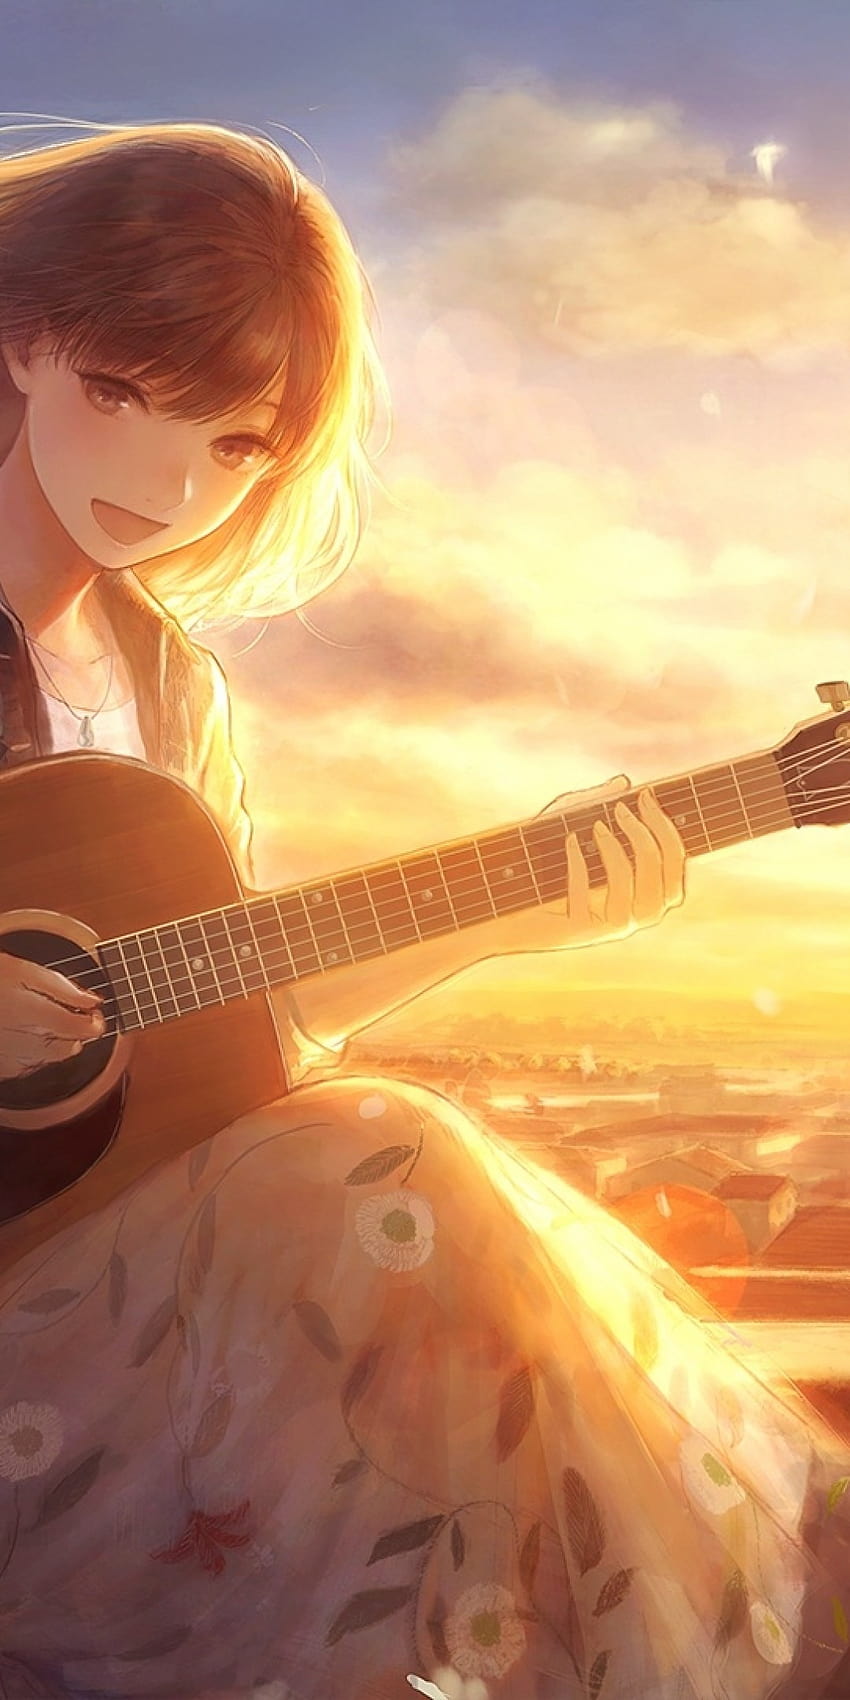 1080x2160 Anime Girl, Chant, Lumière du soleil, Guitare, Instrument, Fleurs, Vent, Pétales, Chat, Scénique pour Huawei Mate 10, chant d'anime Fond d'écran de téléphone HD